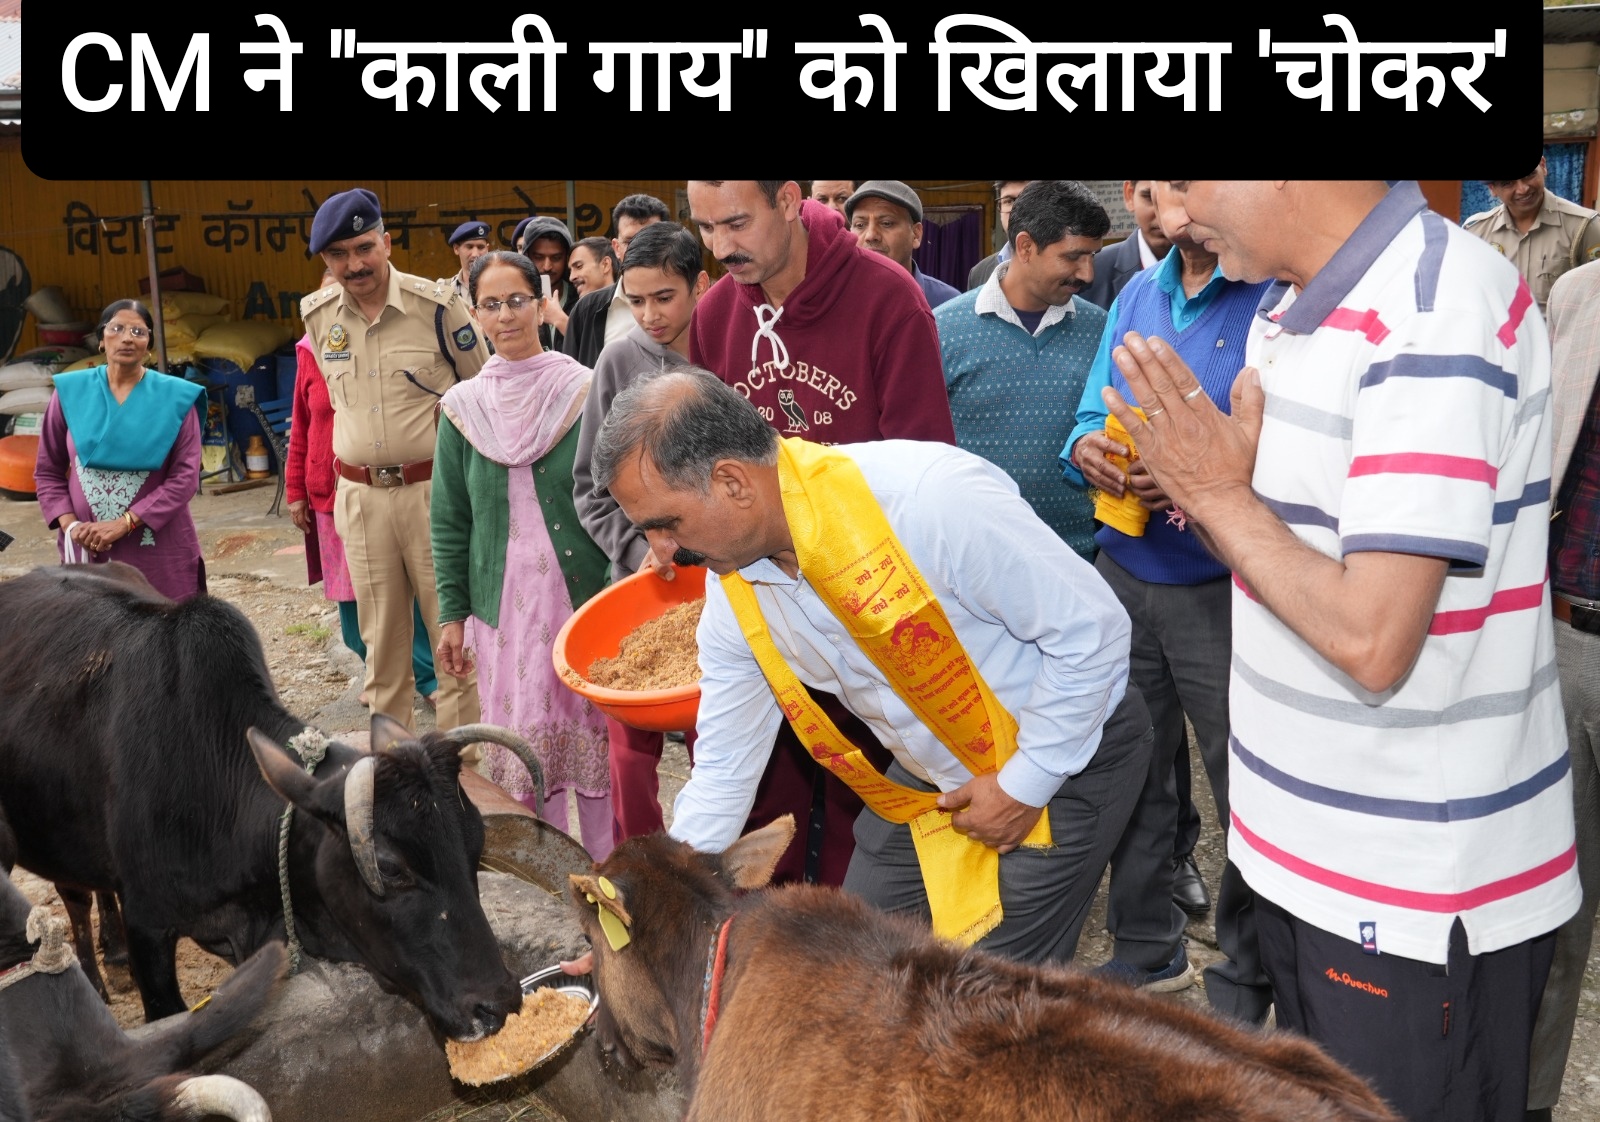 CM सुक्खू ने “काली गाय” को खिलाया ‘चोकर’, टूटू में श्री कामनापूर्ण गौशाला का किया निरीक्षण